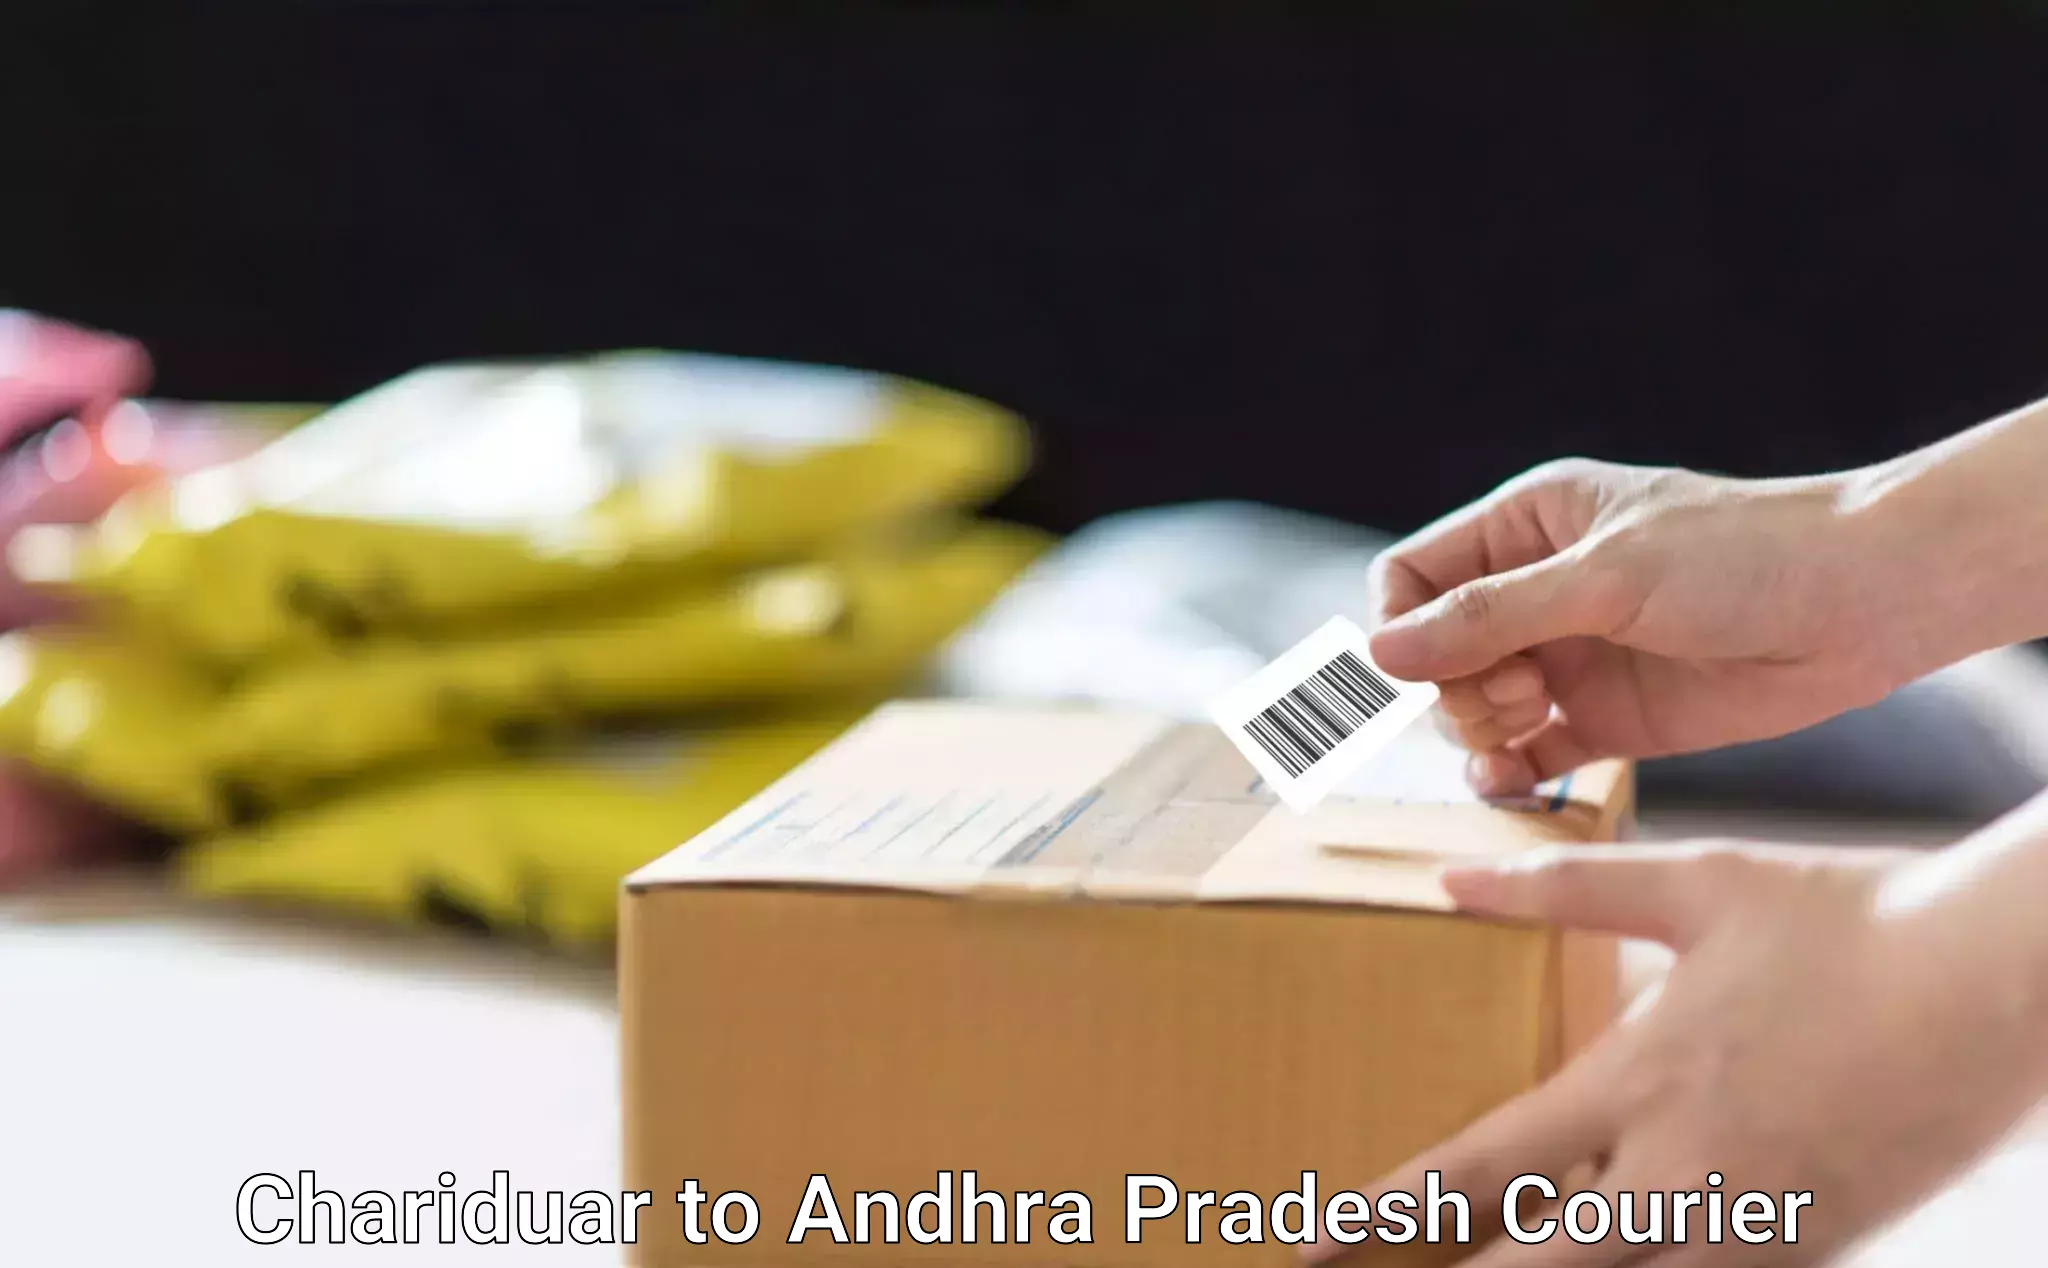 Quality courier services Chariduar to Andhra Pradesh